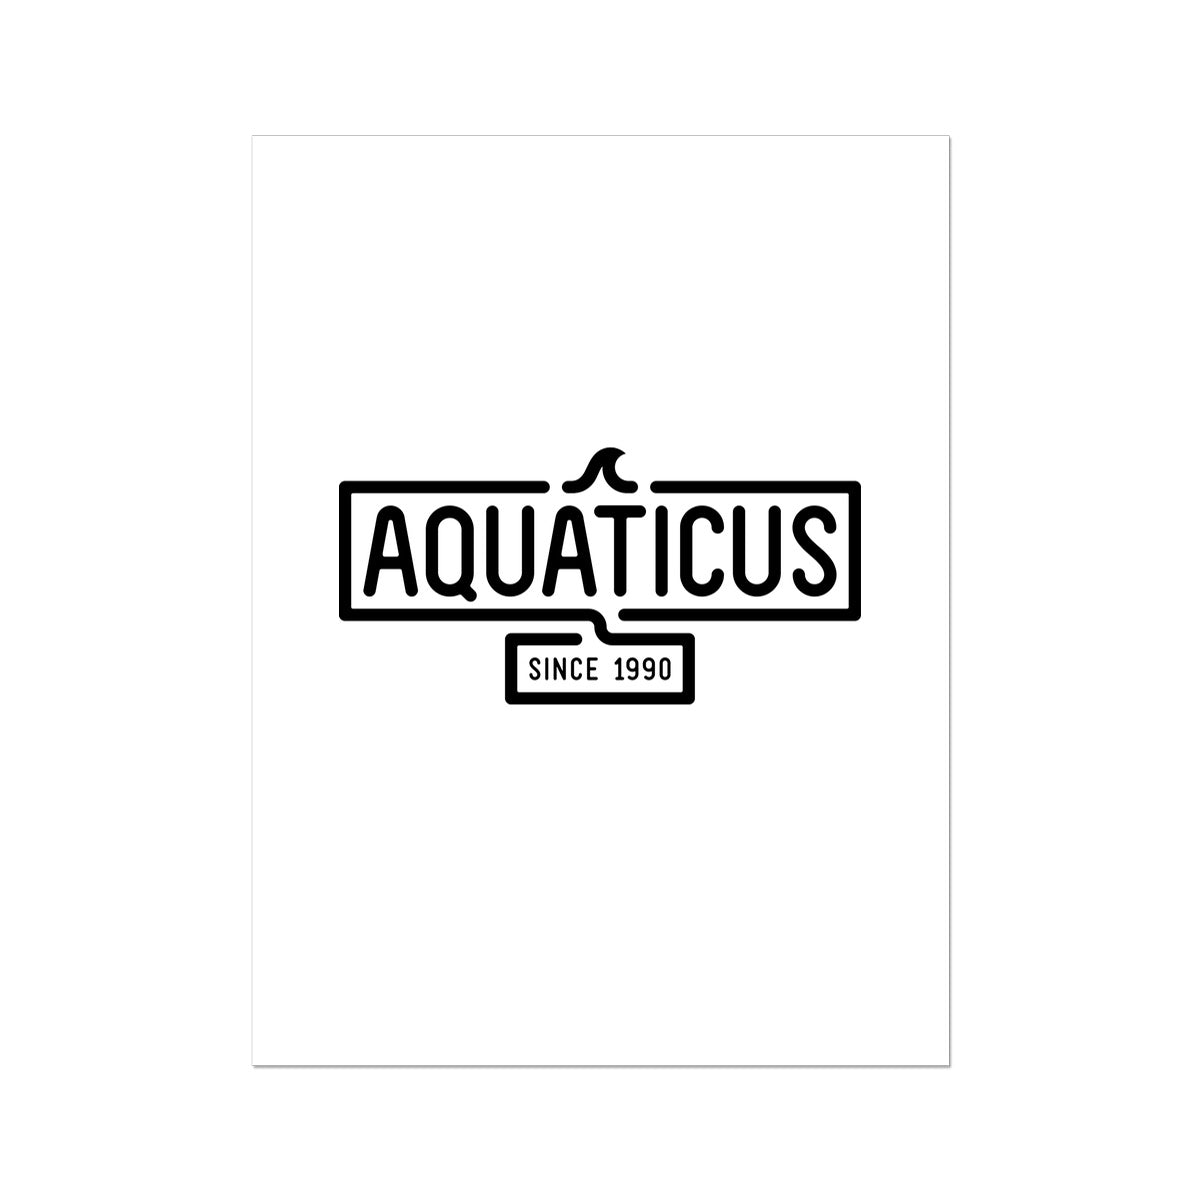 AQUA - 01- Aquaticus - Wall Art Poster